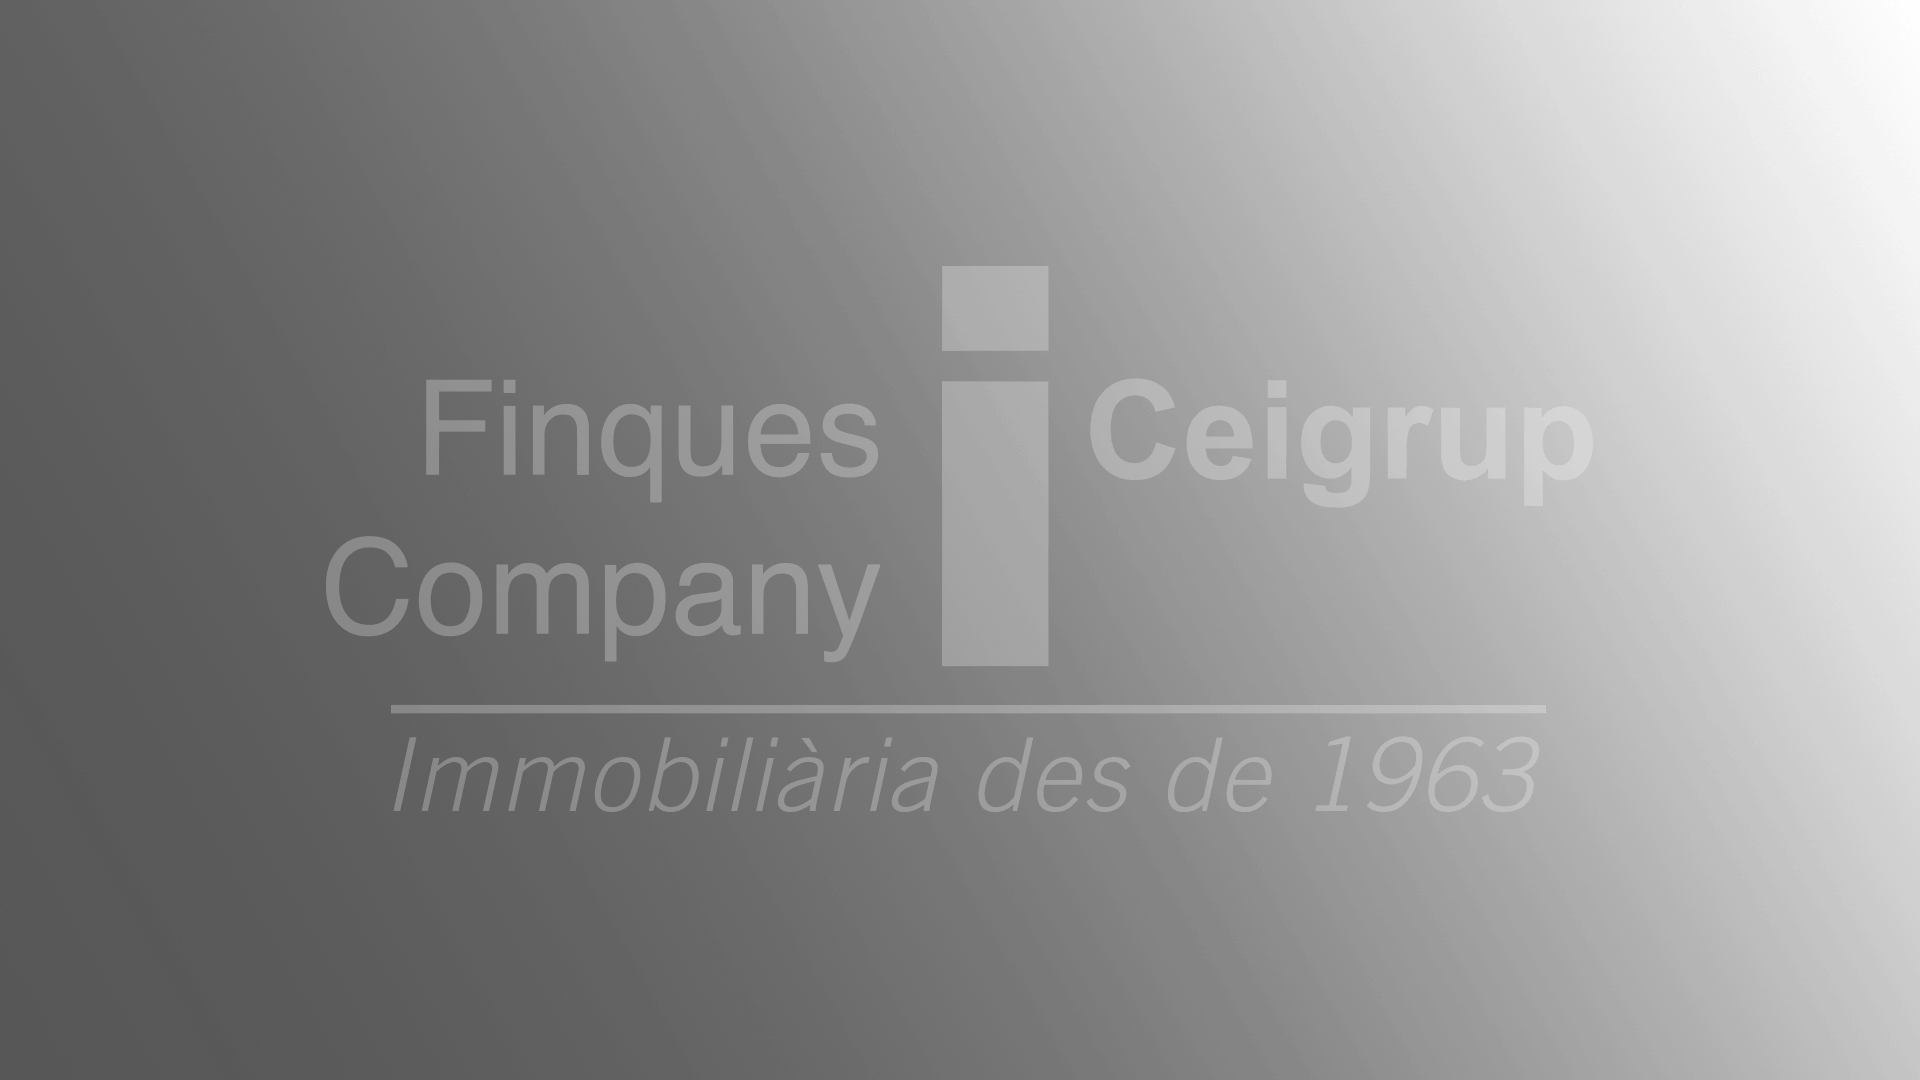 Ceigrup - Finques Company - INVERSIÓN